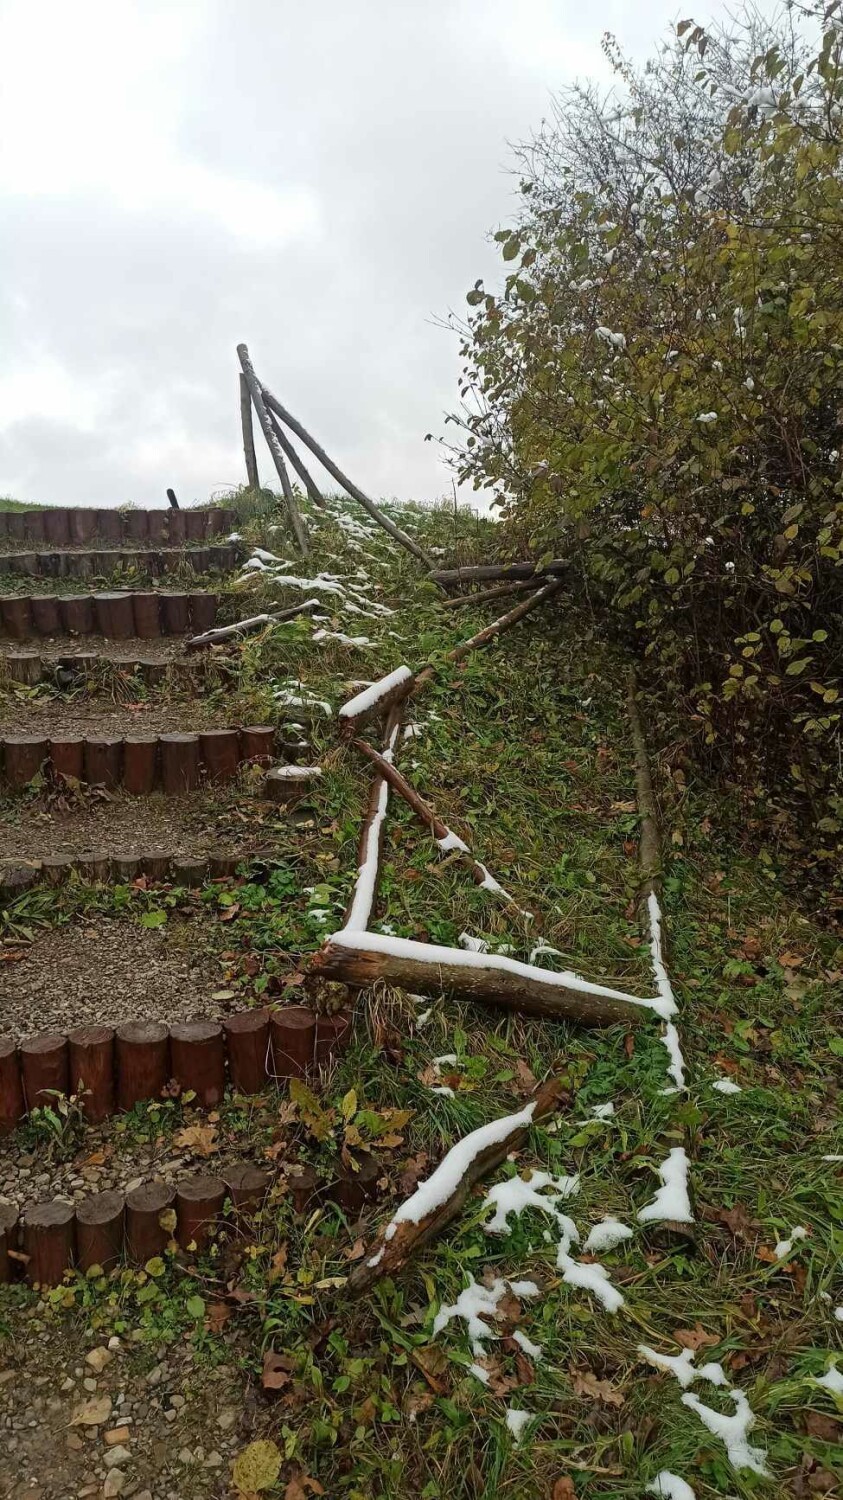 Zły stan schodów w okolicy Kopca Tatarskiego w Przemyślu.